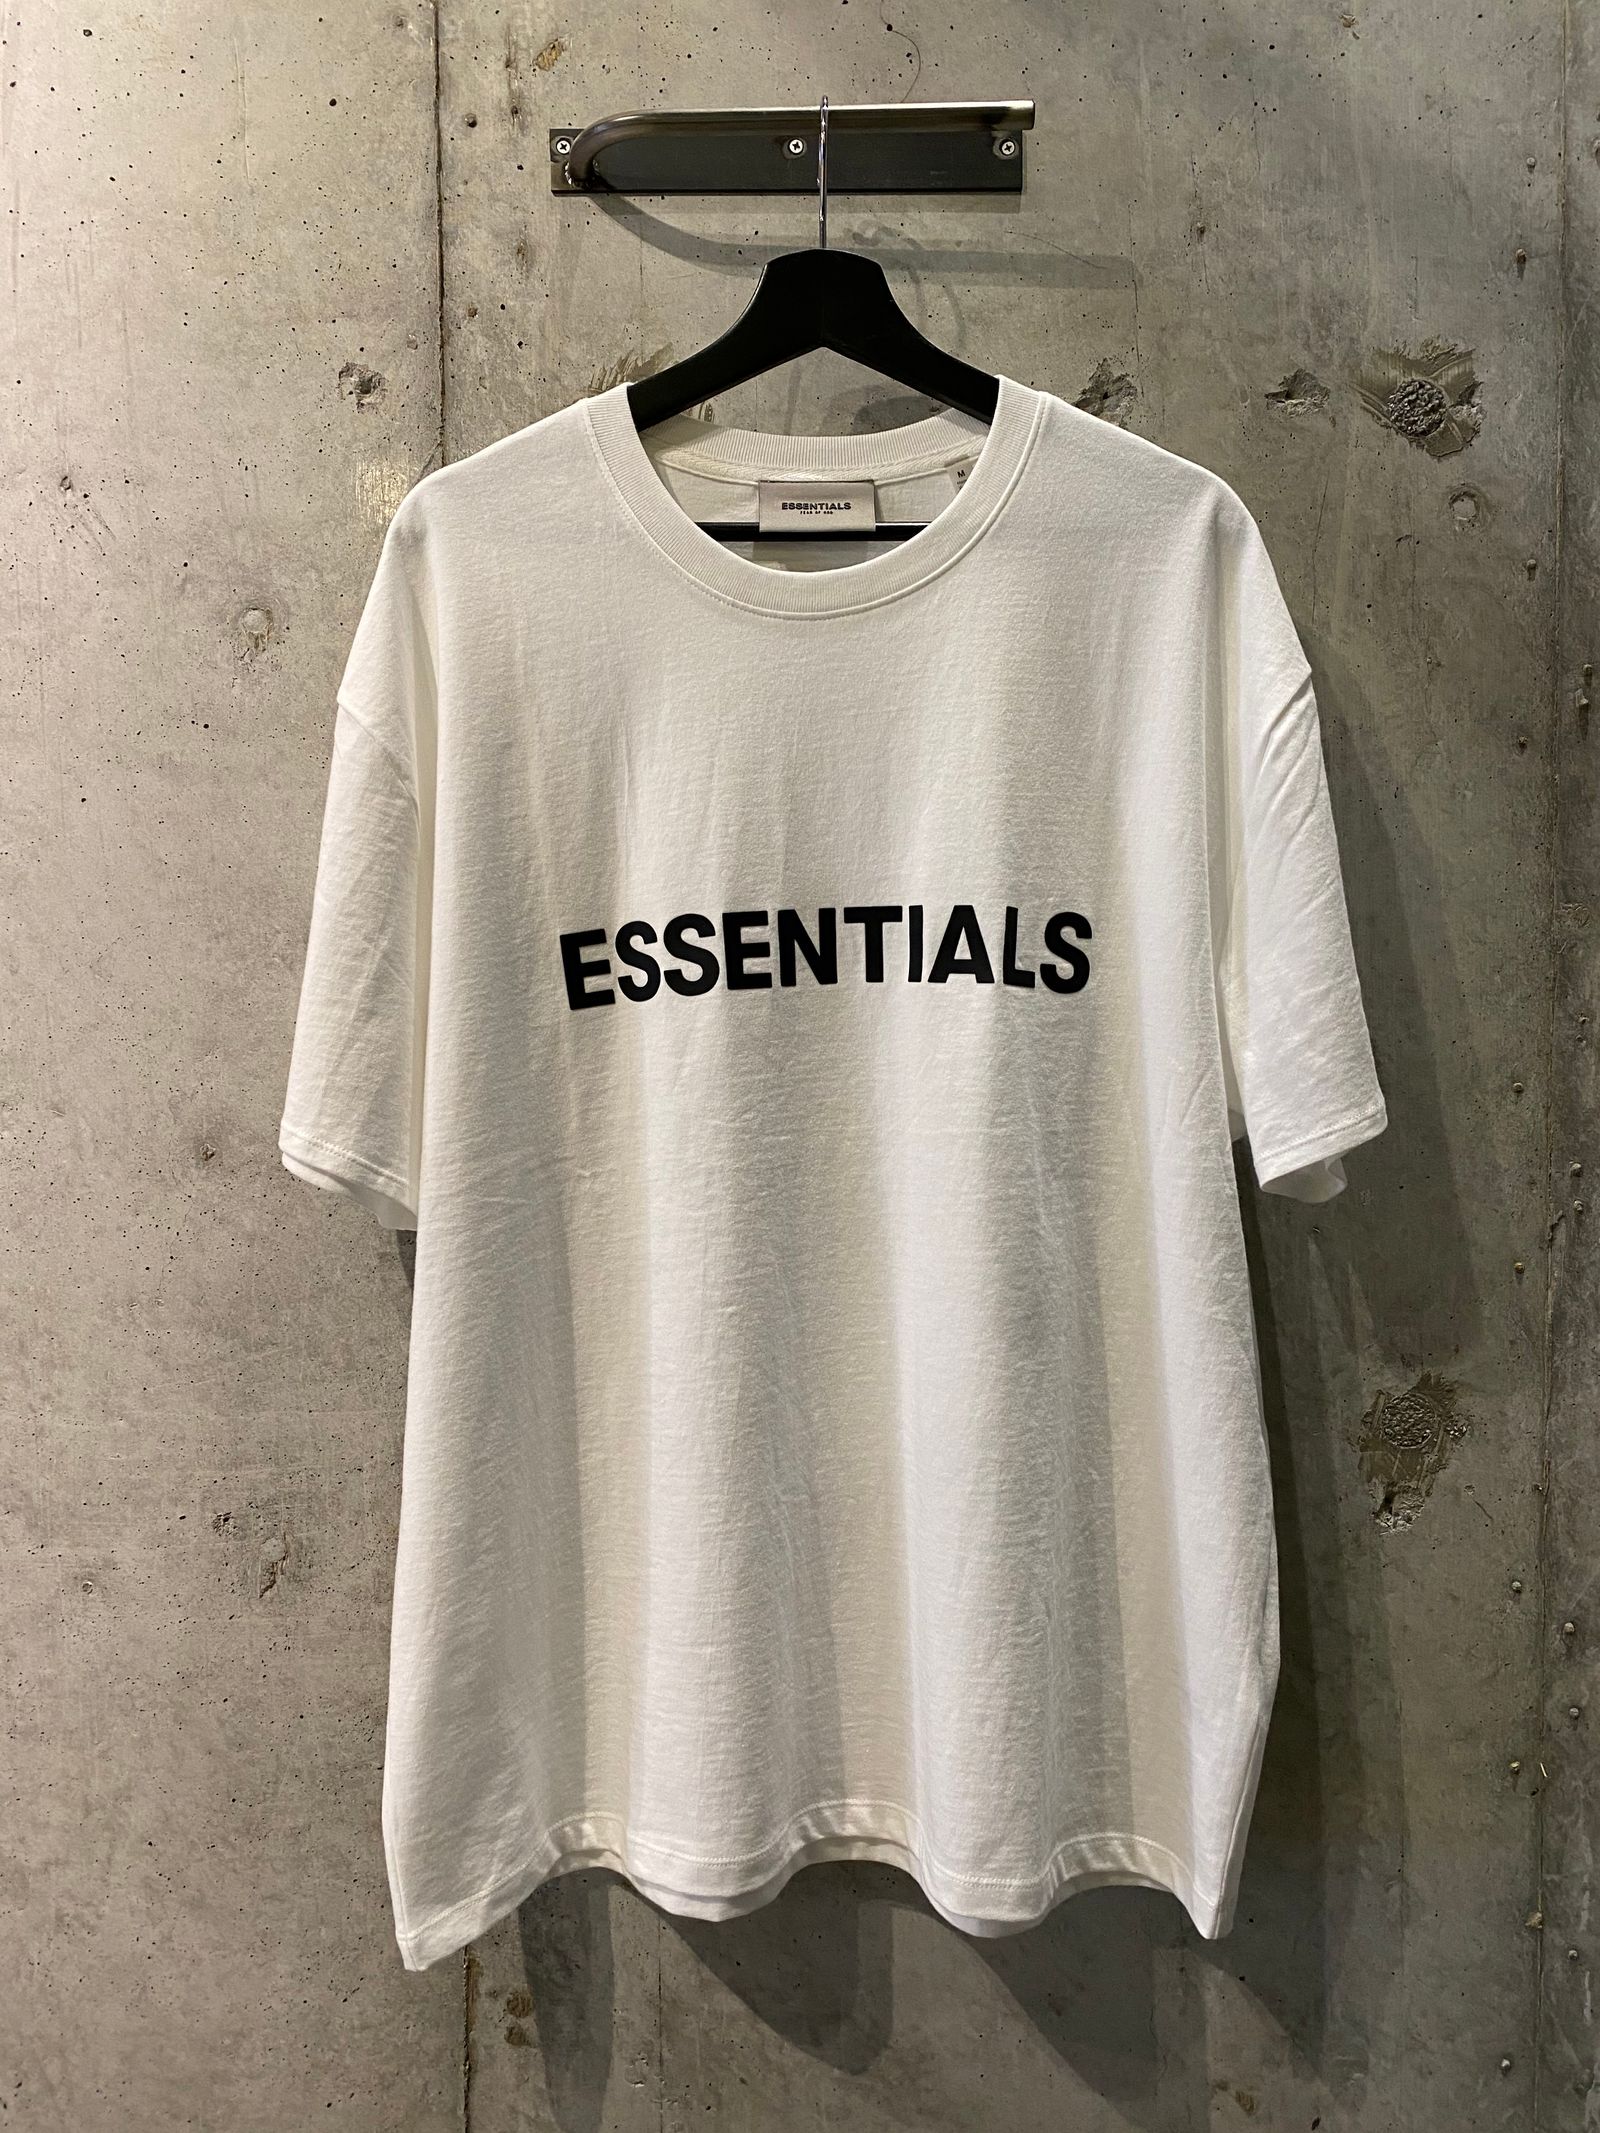 FOG ESSENTIALS - ESSENTIALS half sleeve tee shirt(white) | R ...